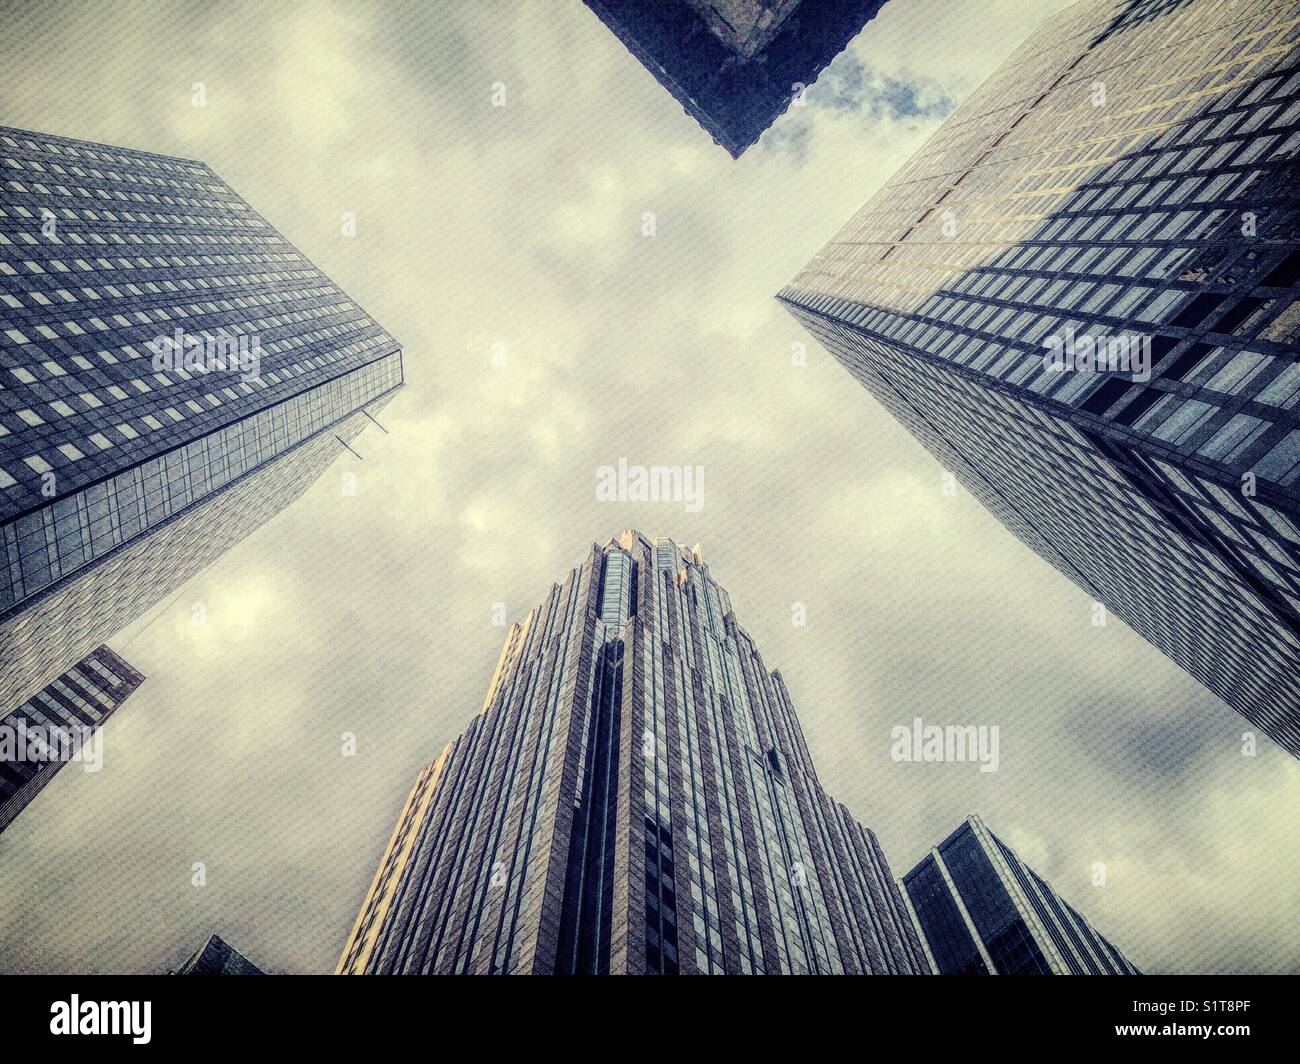 La scala di grigi di grattacieli di New York City shot dal di sotto, NYC, STATI UNITI D'AMERICA Foto Stock